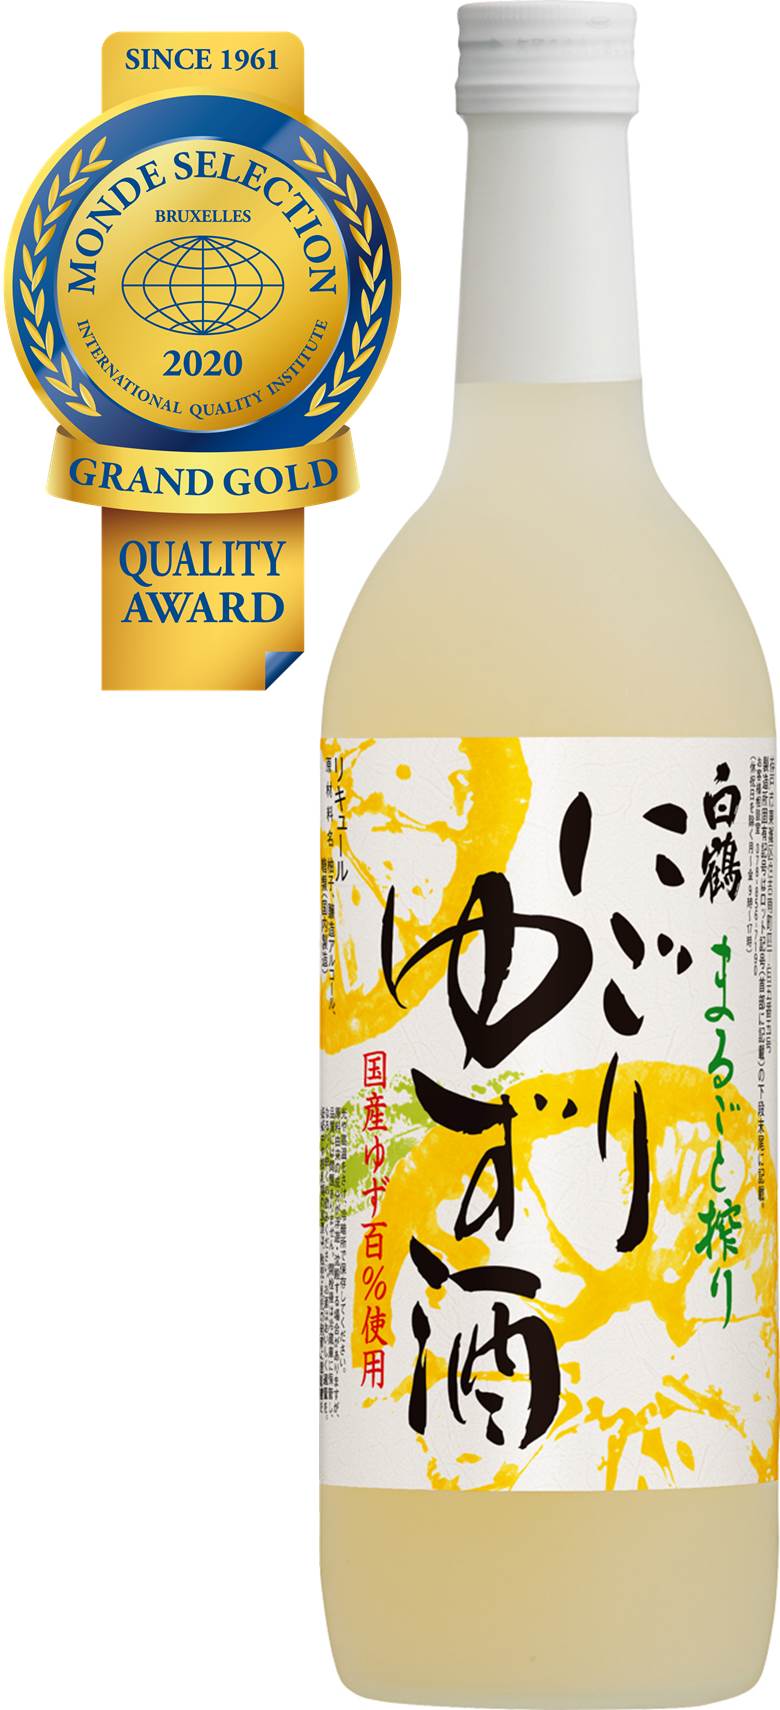 「2020年モンドセレクション」で「白鶴 まるごと搾り にごりゆず酒」が10年連続最高金賞受賞